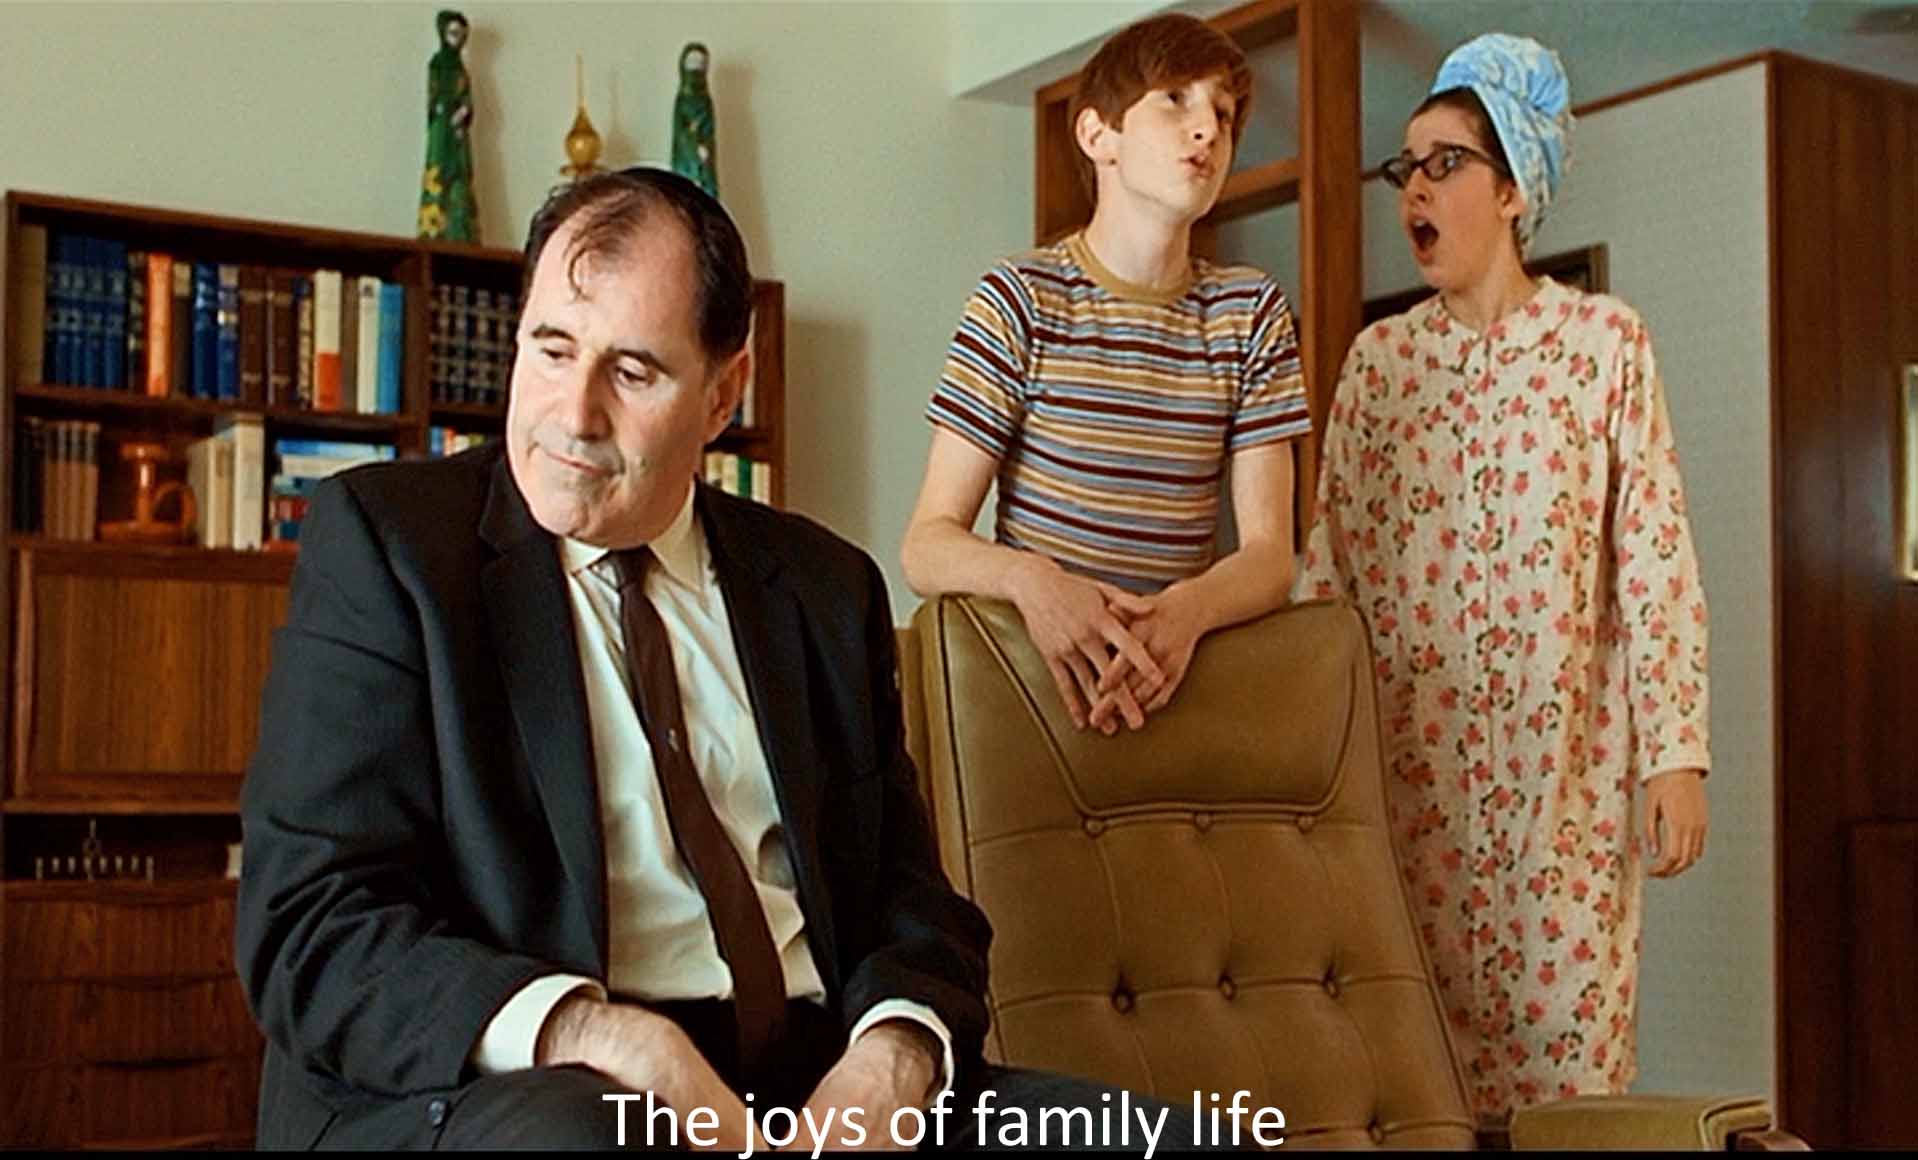 The joys of family life